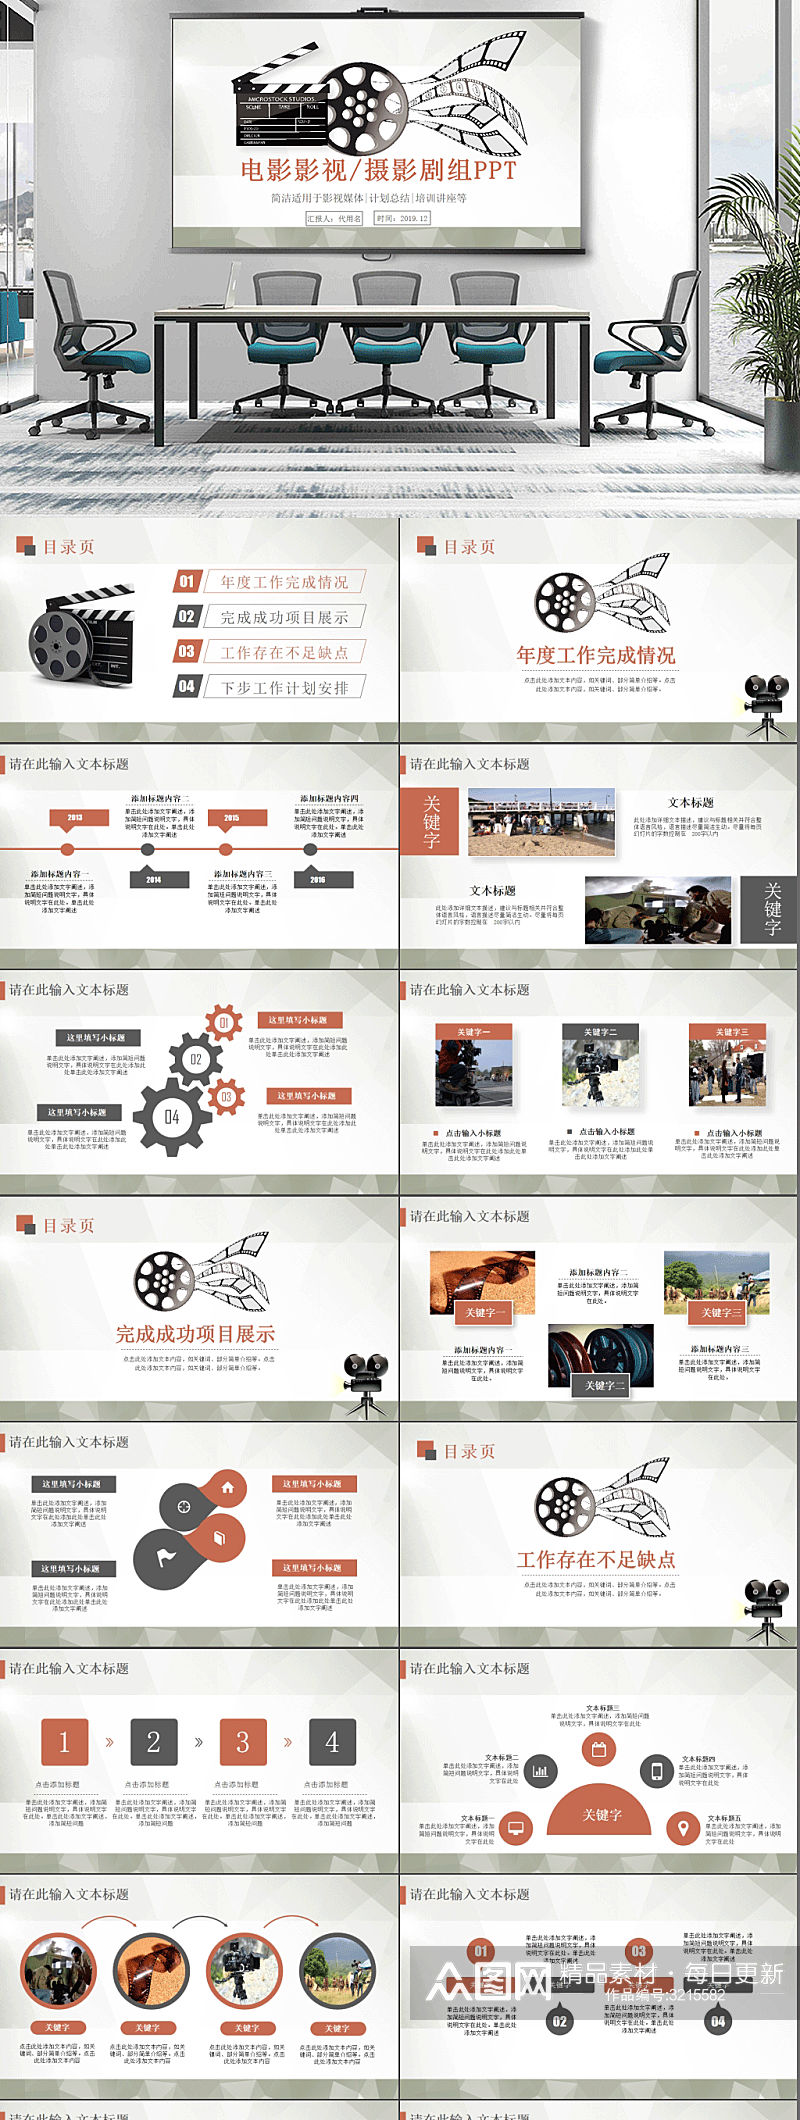 影视电影传媒总结计划策划模板26素材